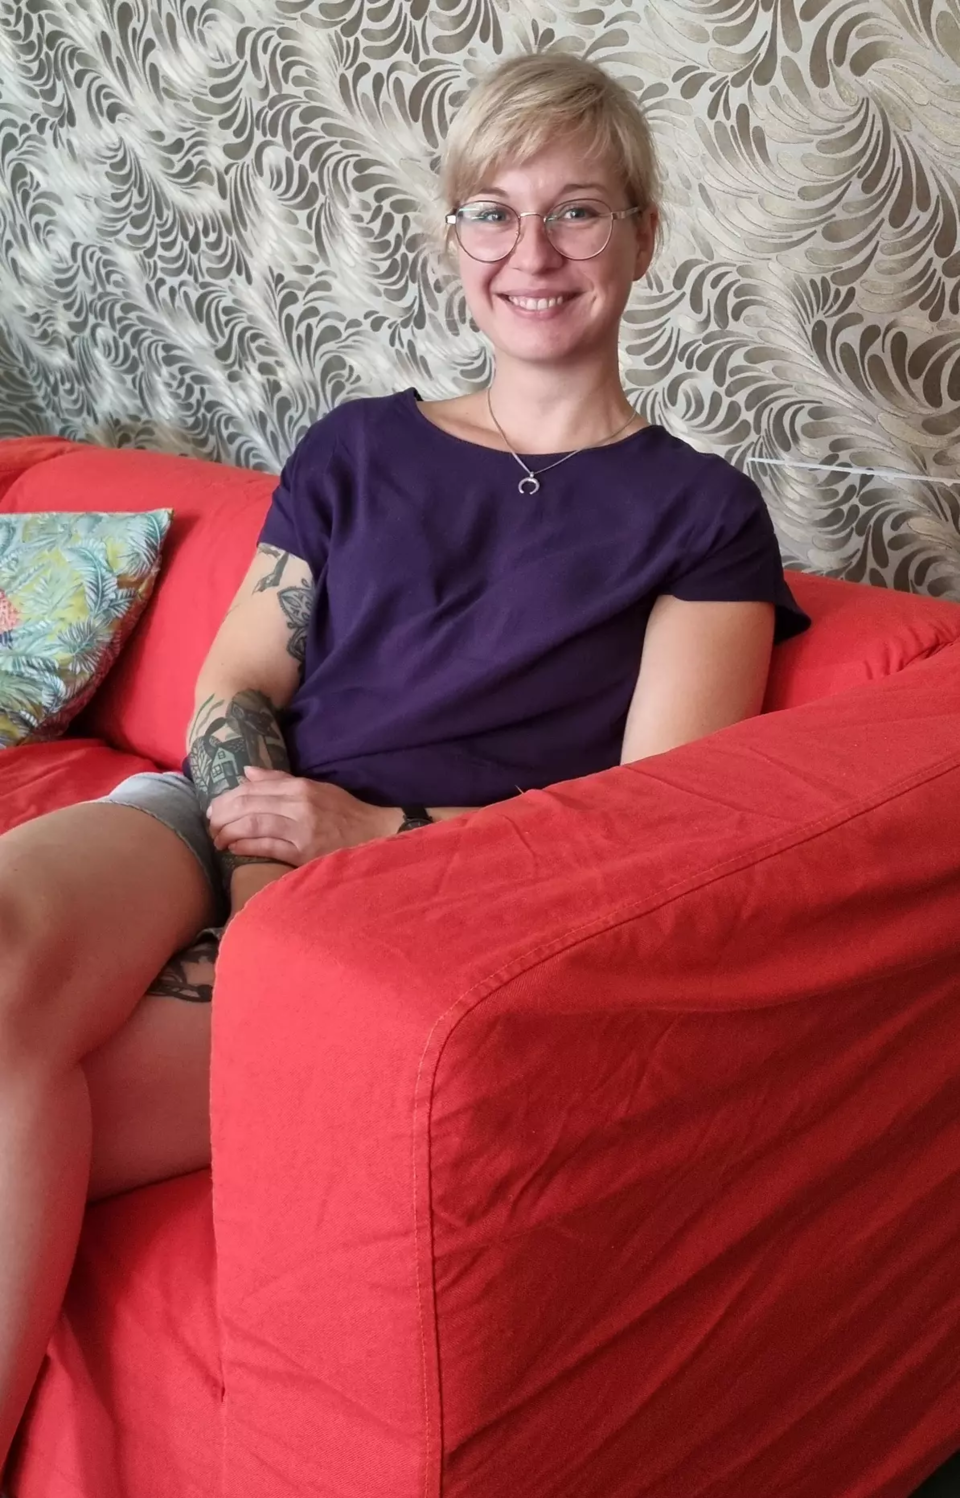 Eine junge Frau mit blonden Haaren, Brille und Tattoos auf dem Arm sitzt lächelnd auf einer Couch von einer geblümten Tapete